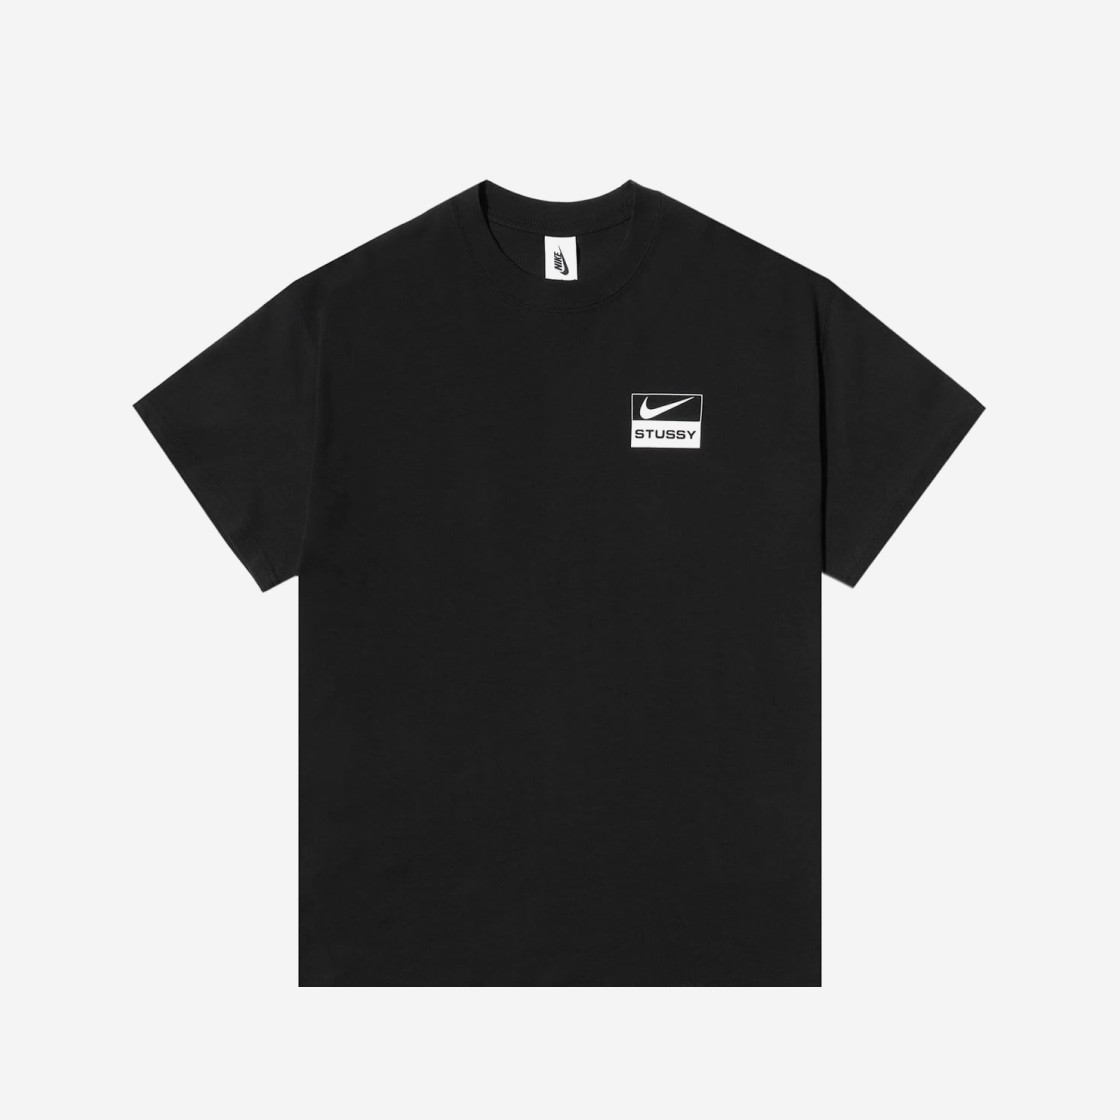 나이키 x 스투시 SS BR 스피리돈 티셔츠 블랙 - US/EU CU9256-010